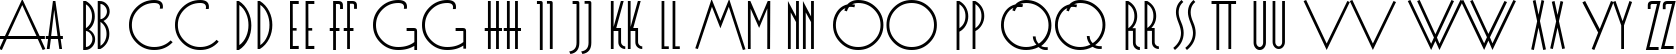 Пример написания английского алфавита шрифтом Evgenia Deco